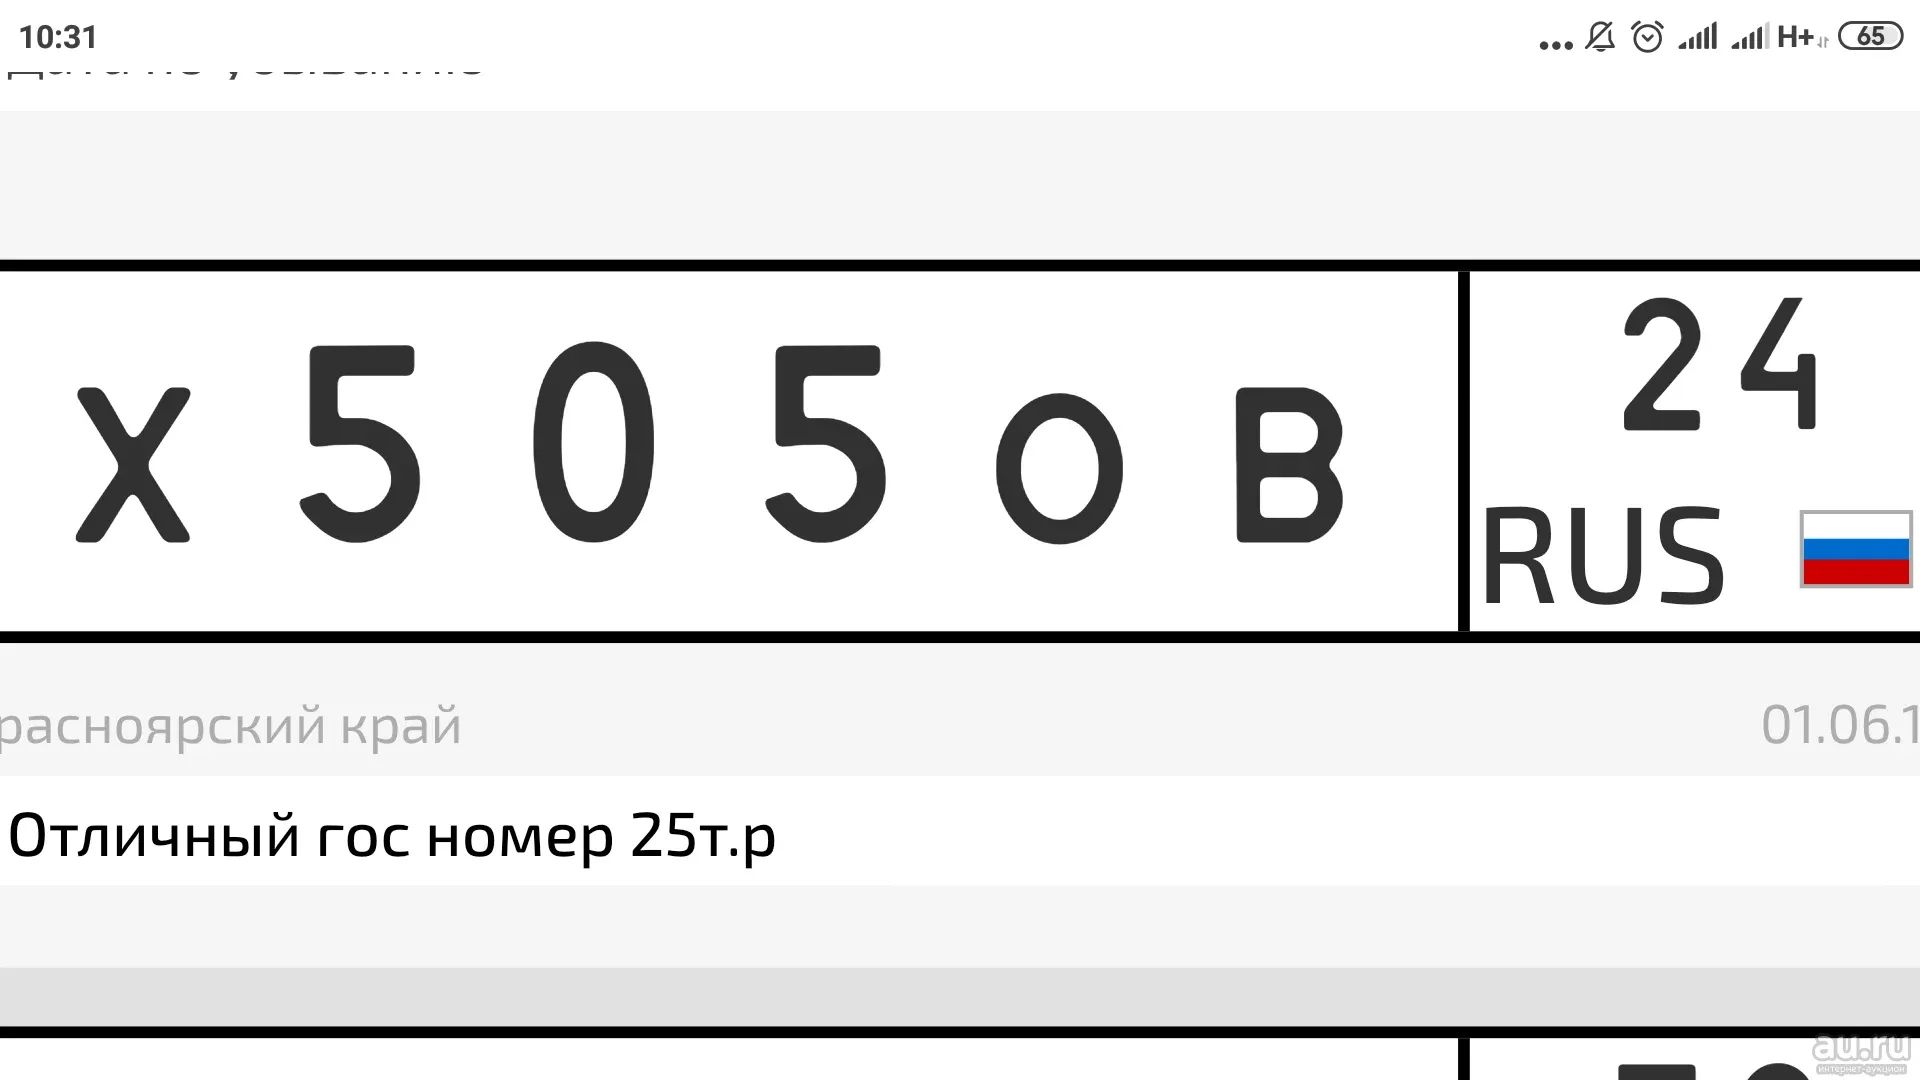 Сайт с бесплатными номерами россии. Шаблон гос номера автомобиля для печати.